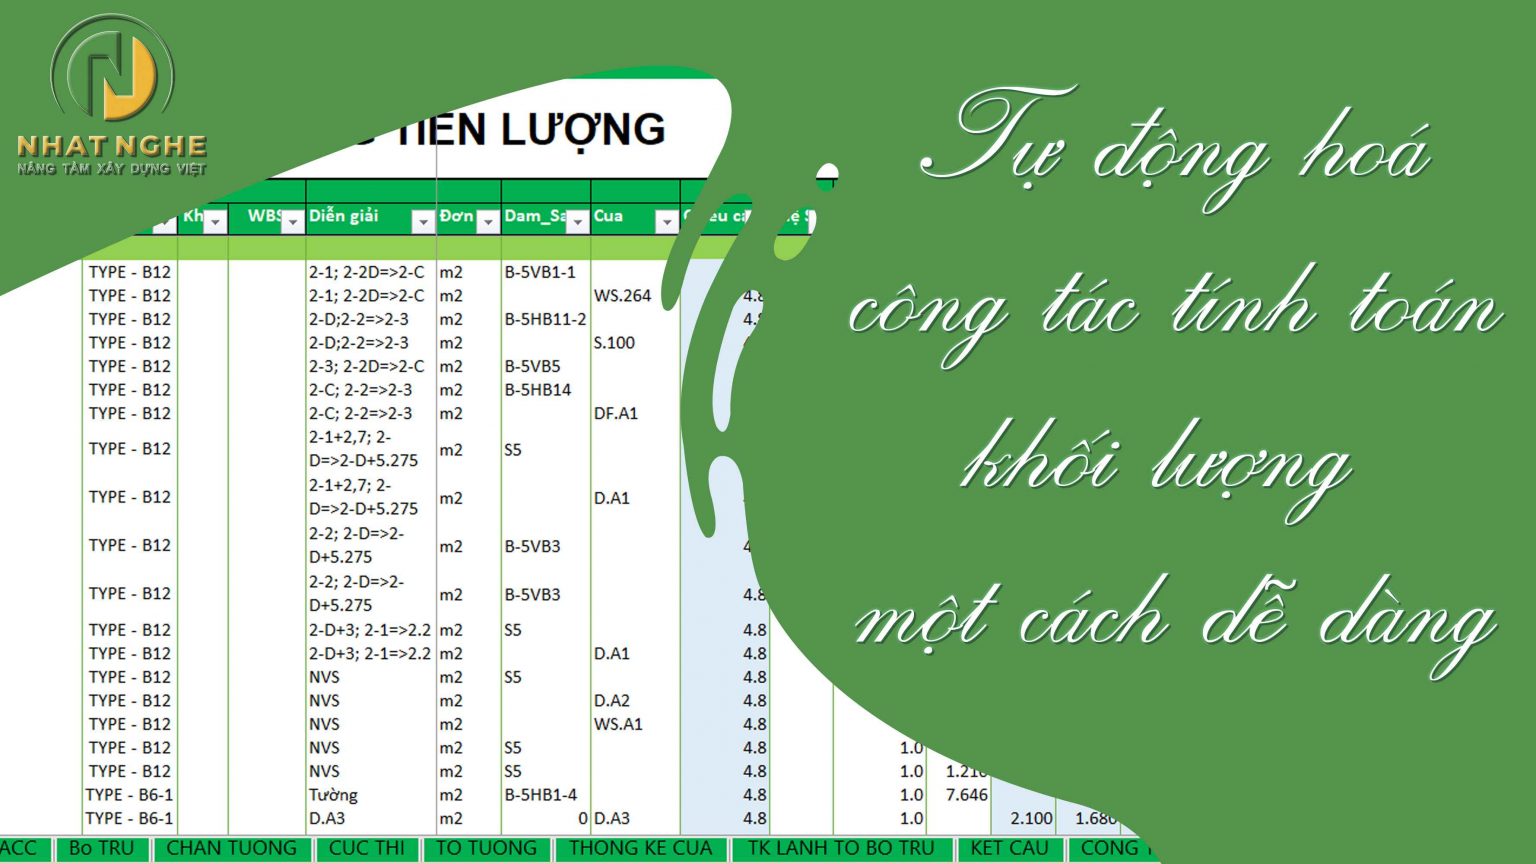 Huynh Nhat Linh 361 1536x864